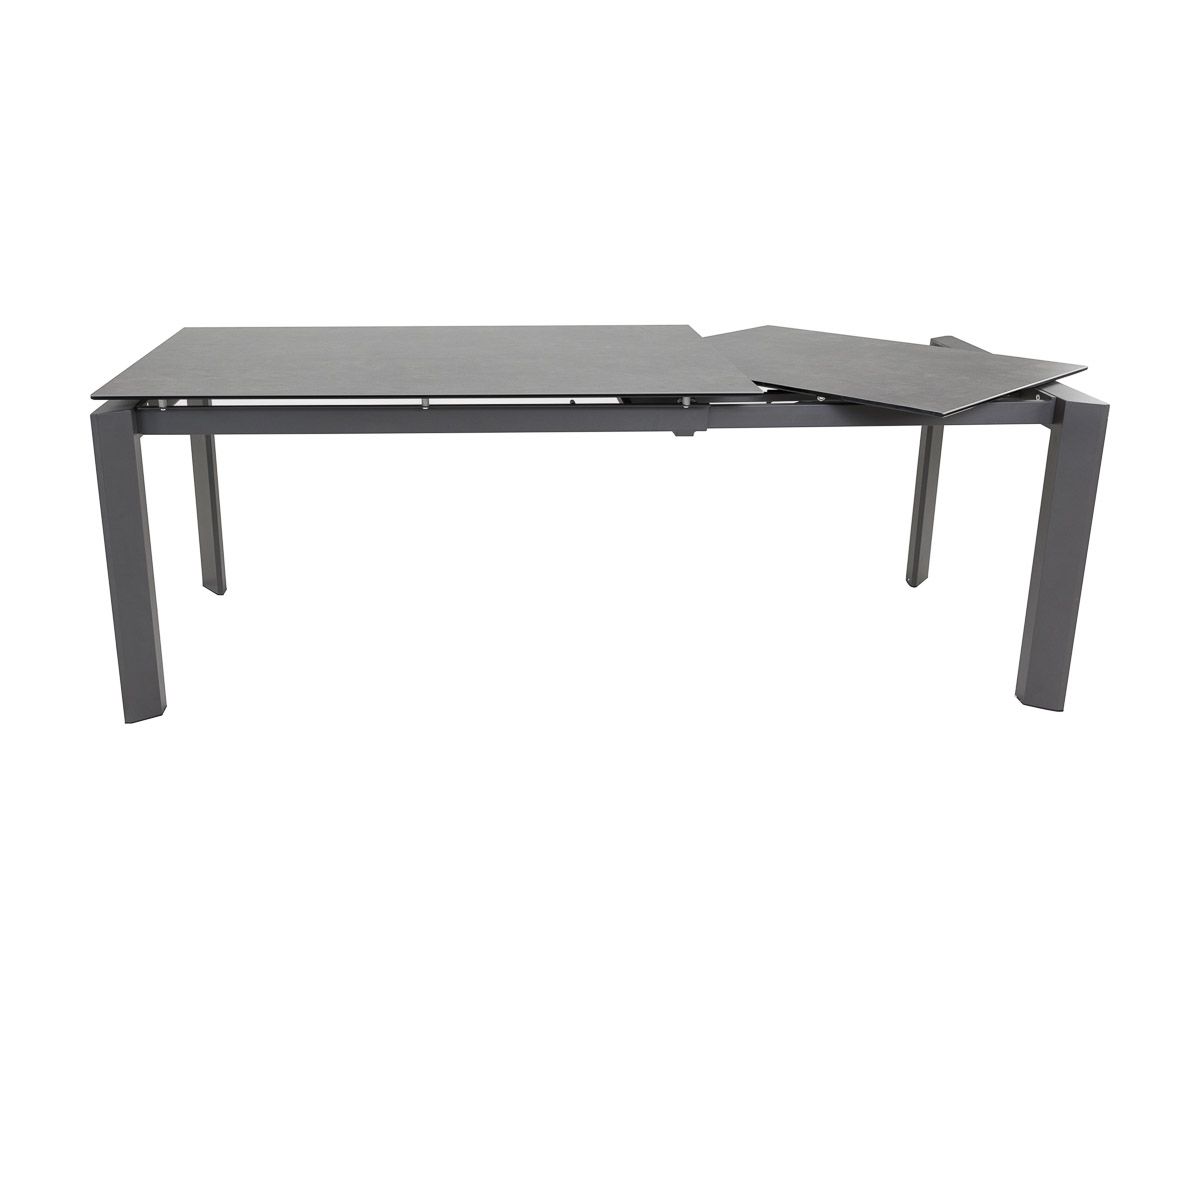 Table céramique extensible 160 x 90 cm avec allonge intégrée